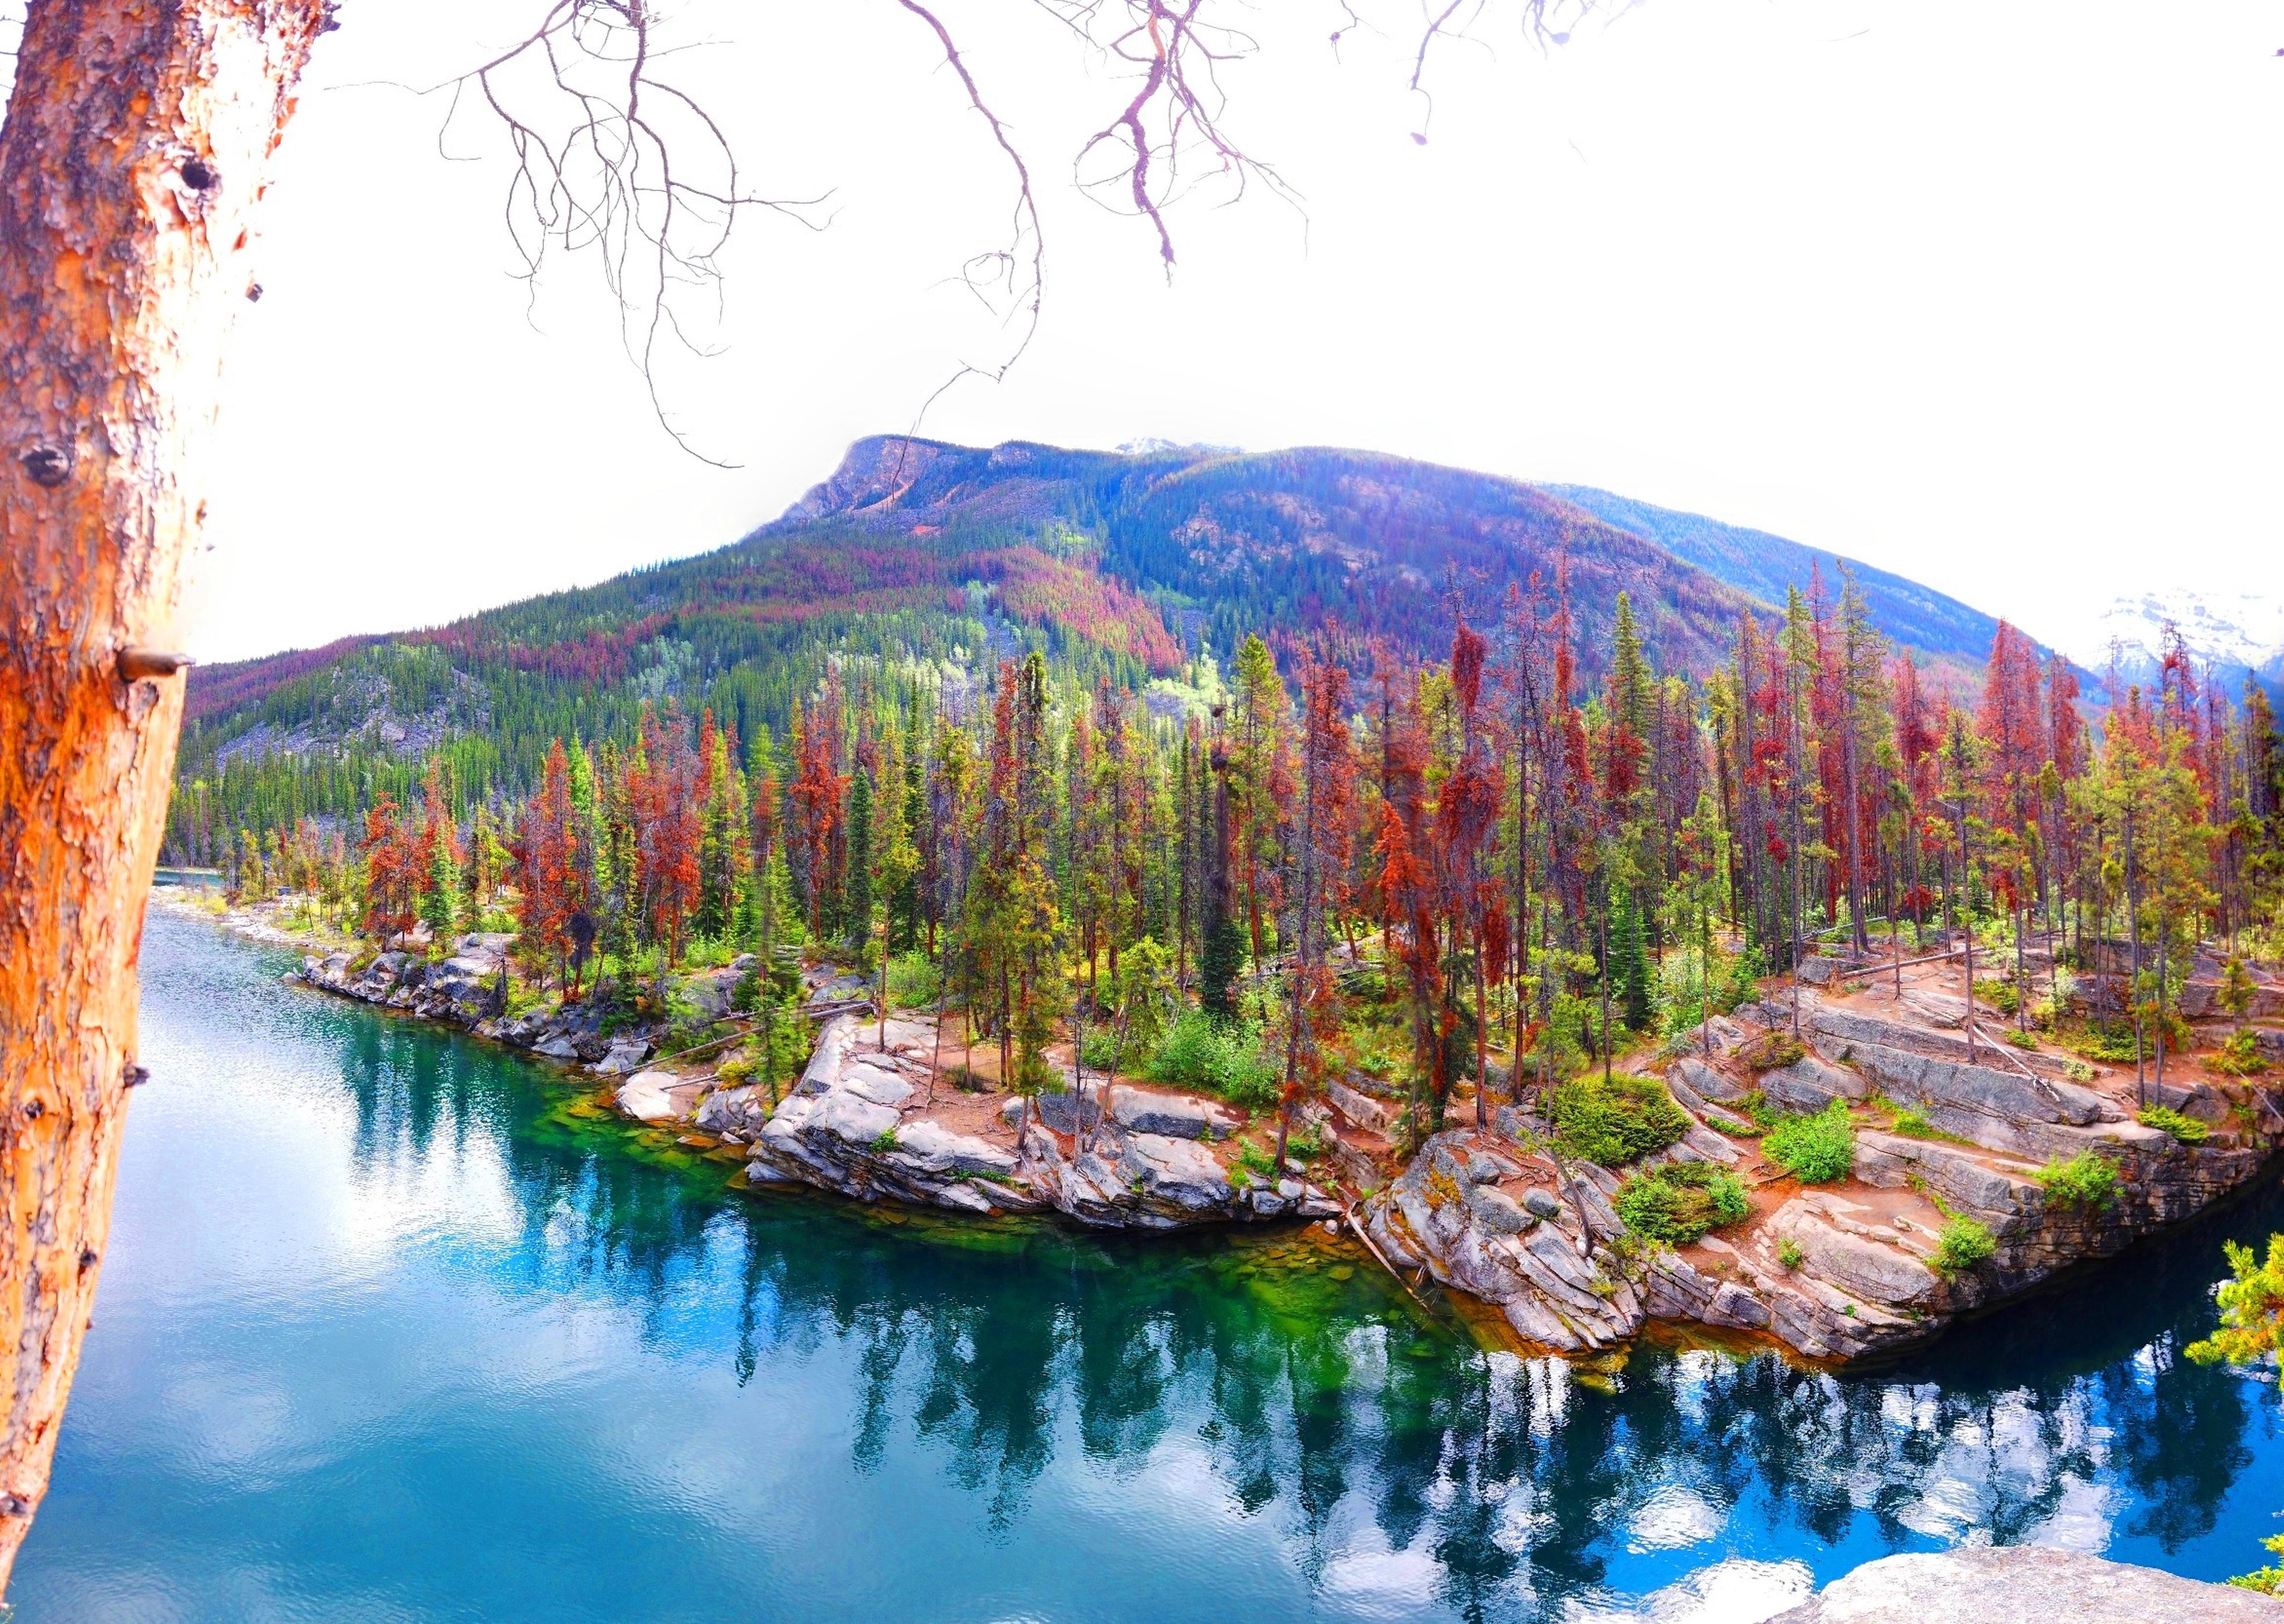 #naturliebe #travelchallenge
Die wahre Natur pur in Kanada!